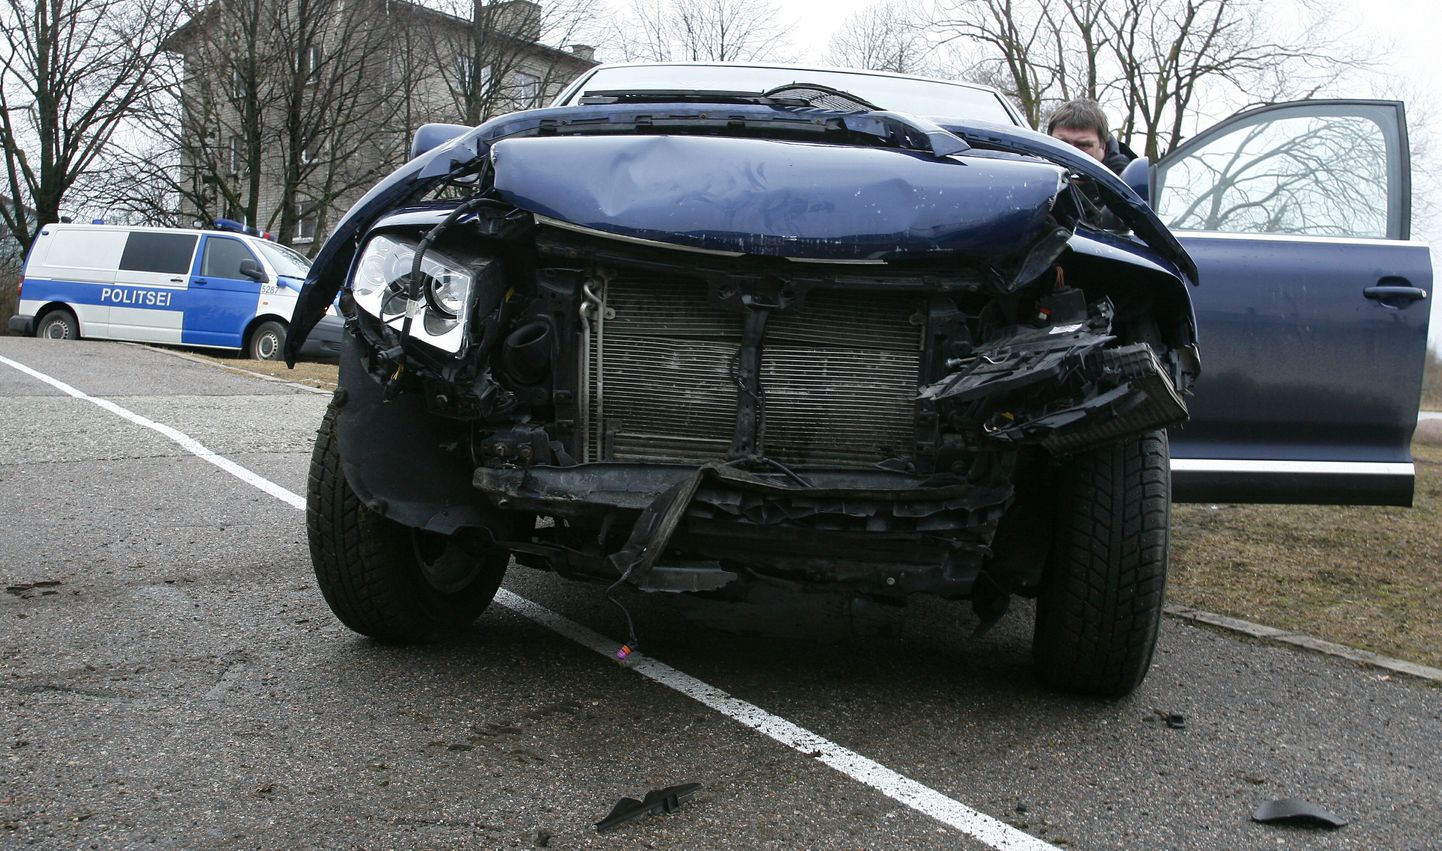 Liiklusõnnetusse sattunud auto. Foto on illustreeriv.